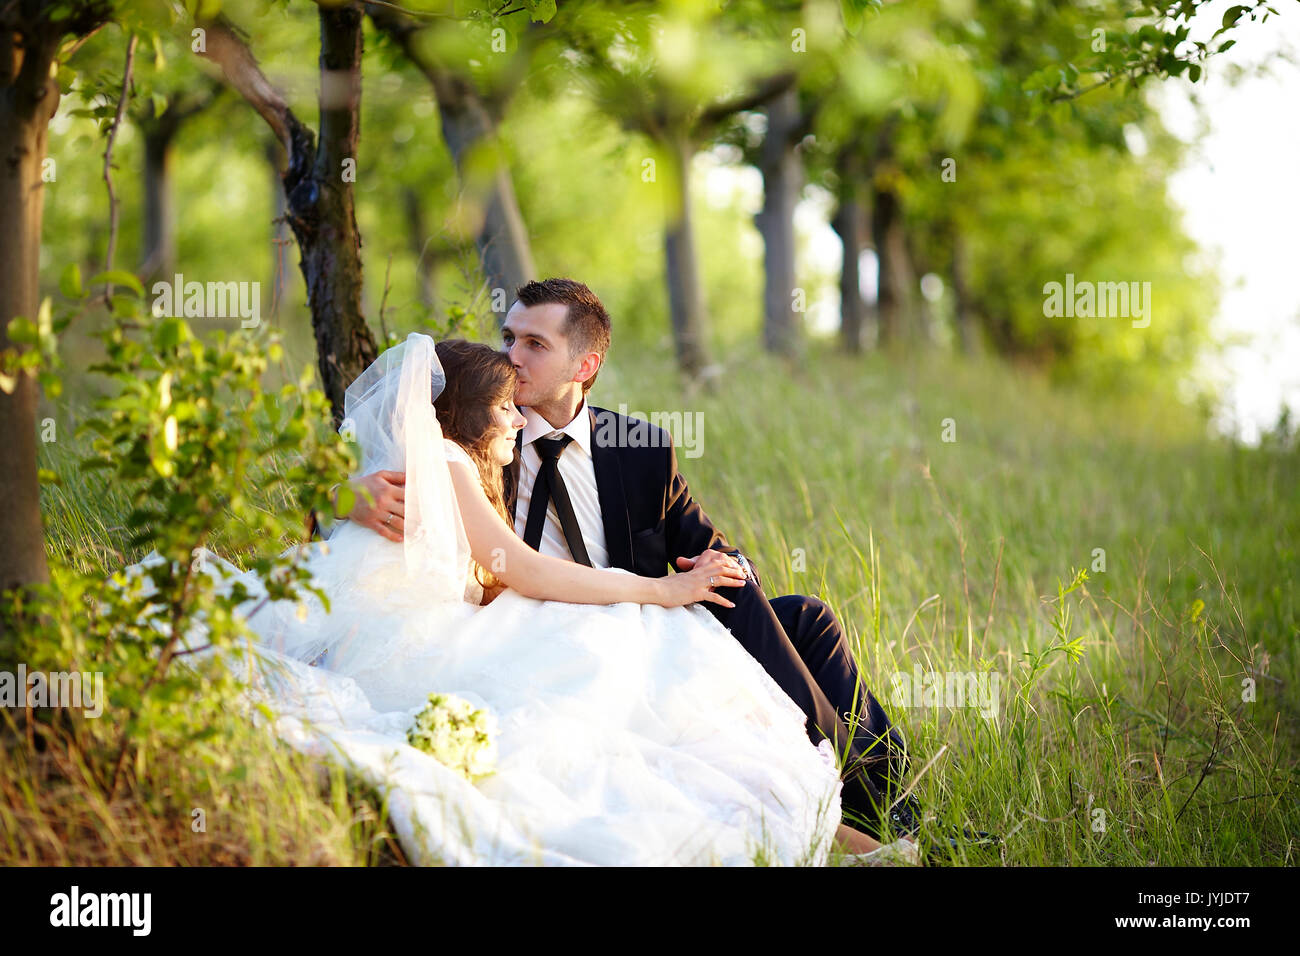 La novia y el novio abrazar en el jardín. Foto de stock